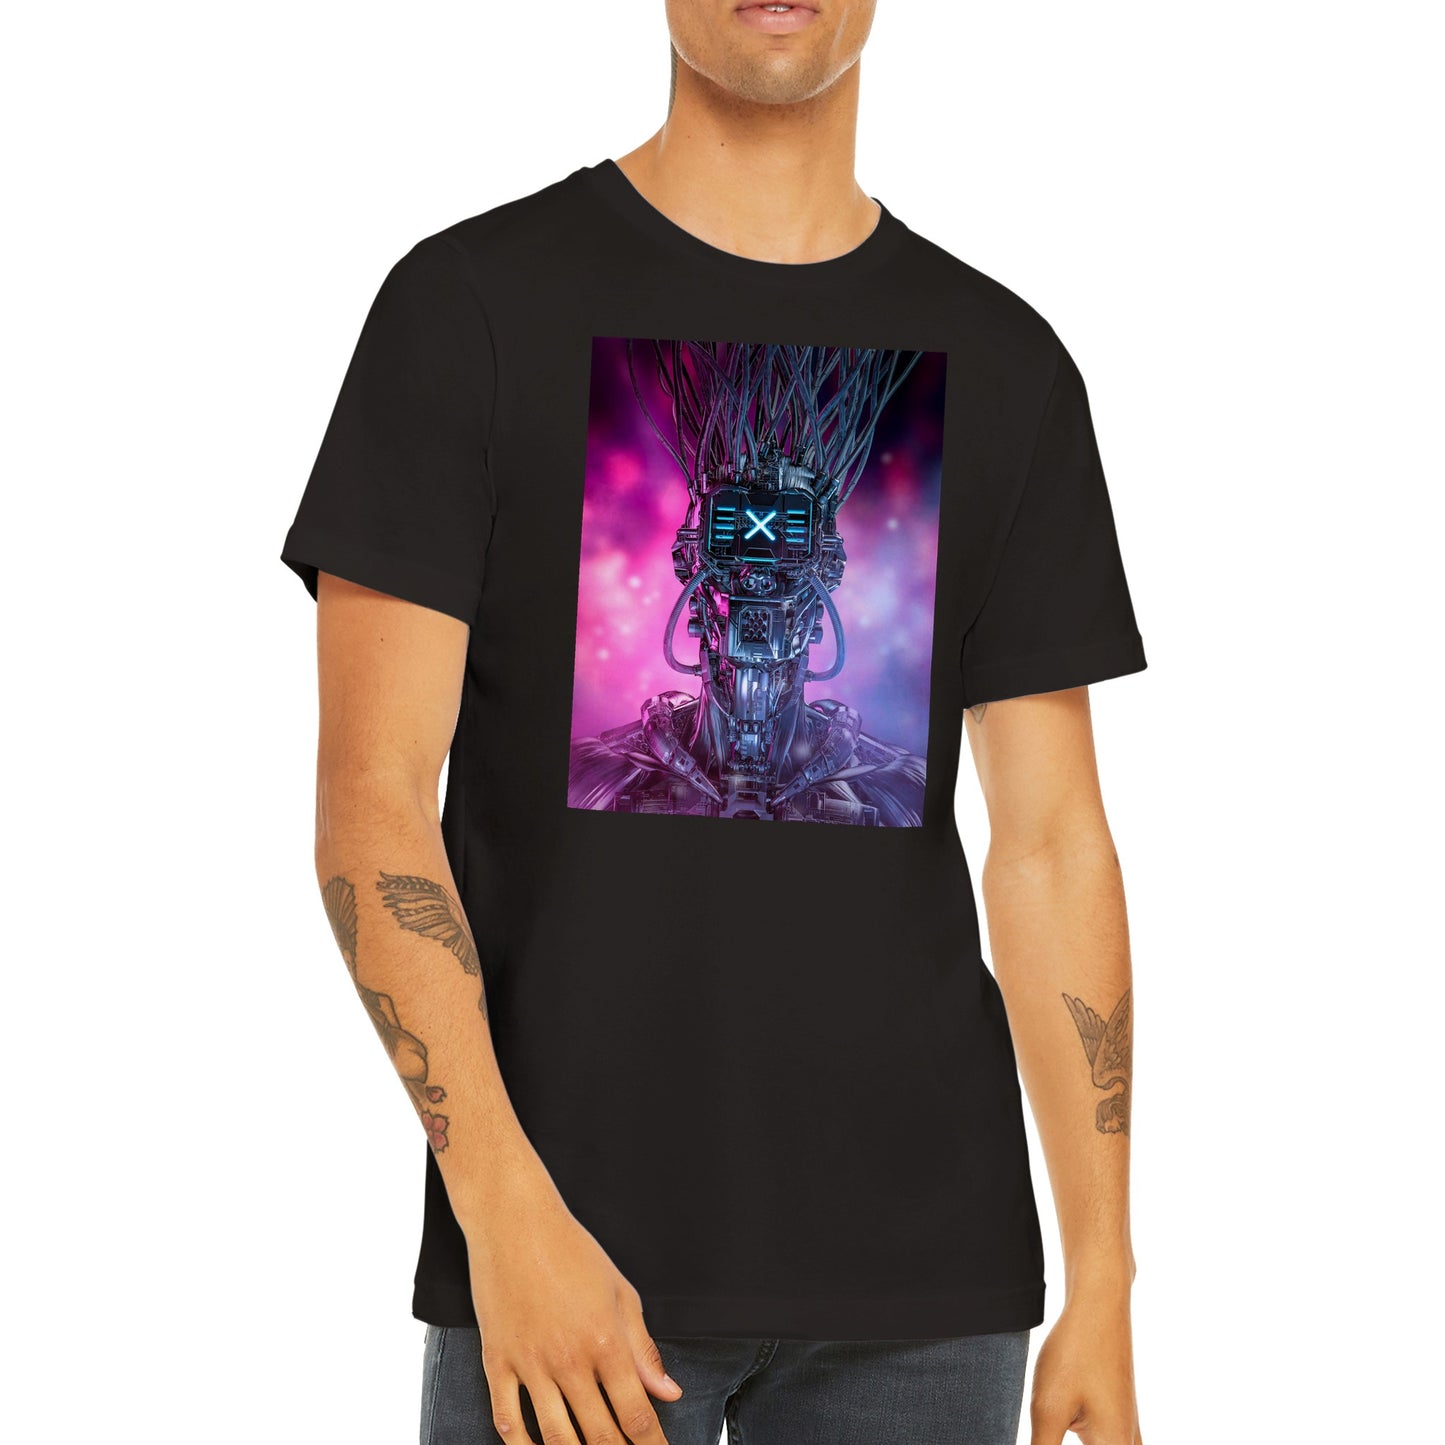 Cyberpunk skull robot T-shirt